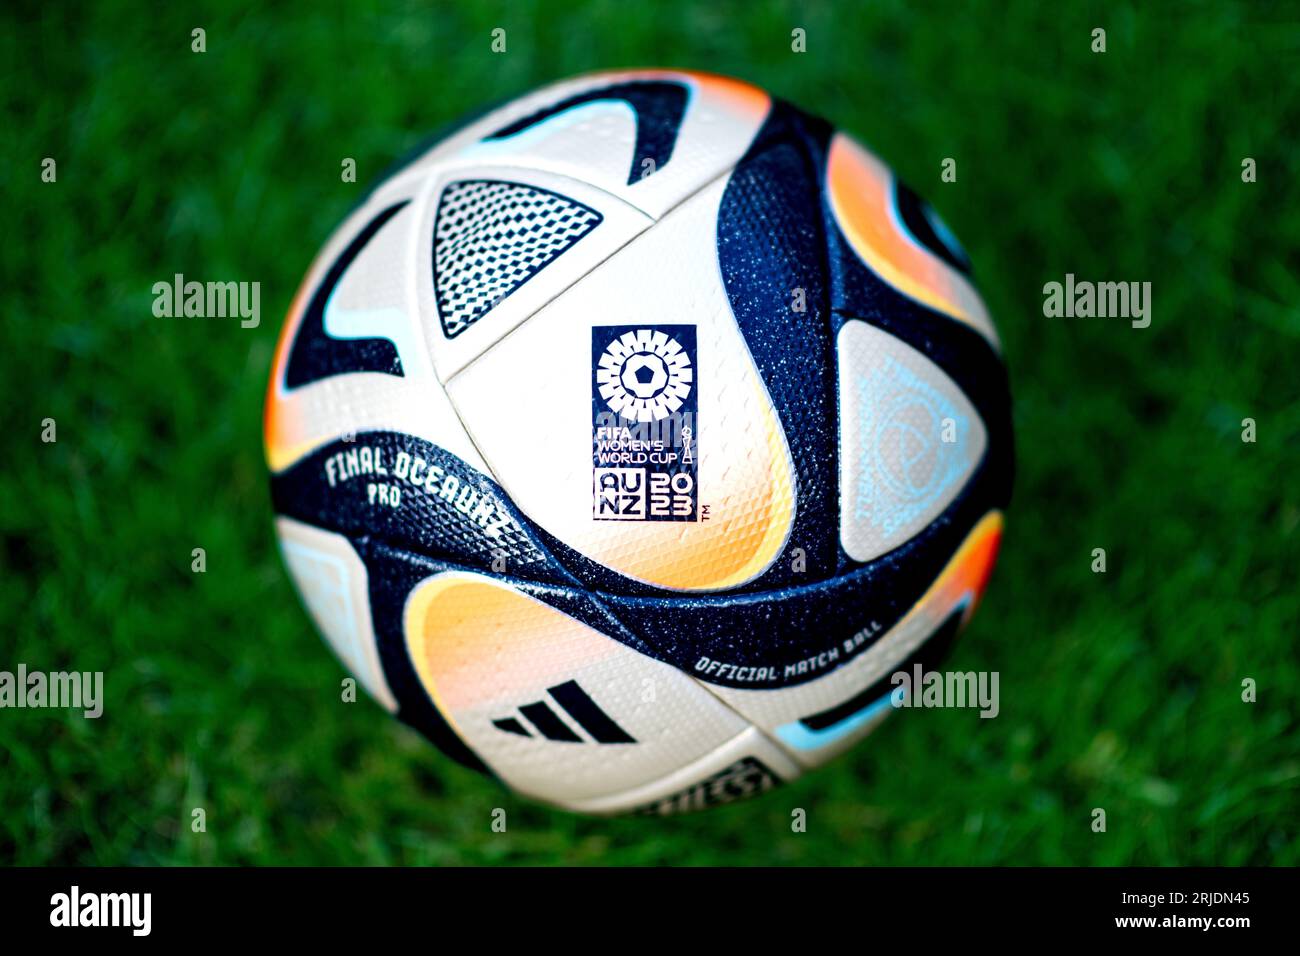 adidas FIFA Women's World Cup 2023 Oceaunz Pro Training Match Ball WC 2023